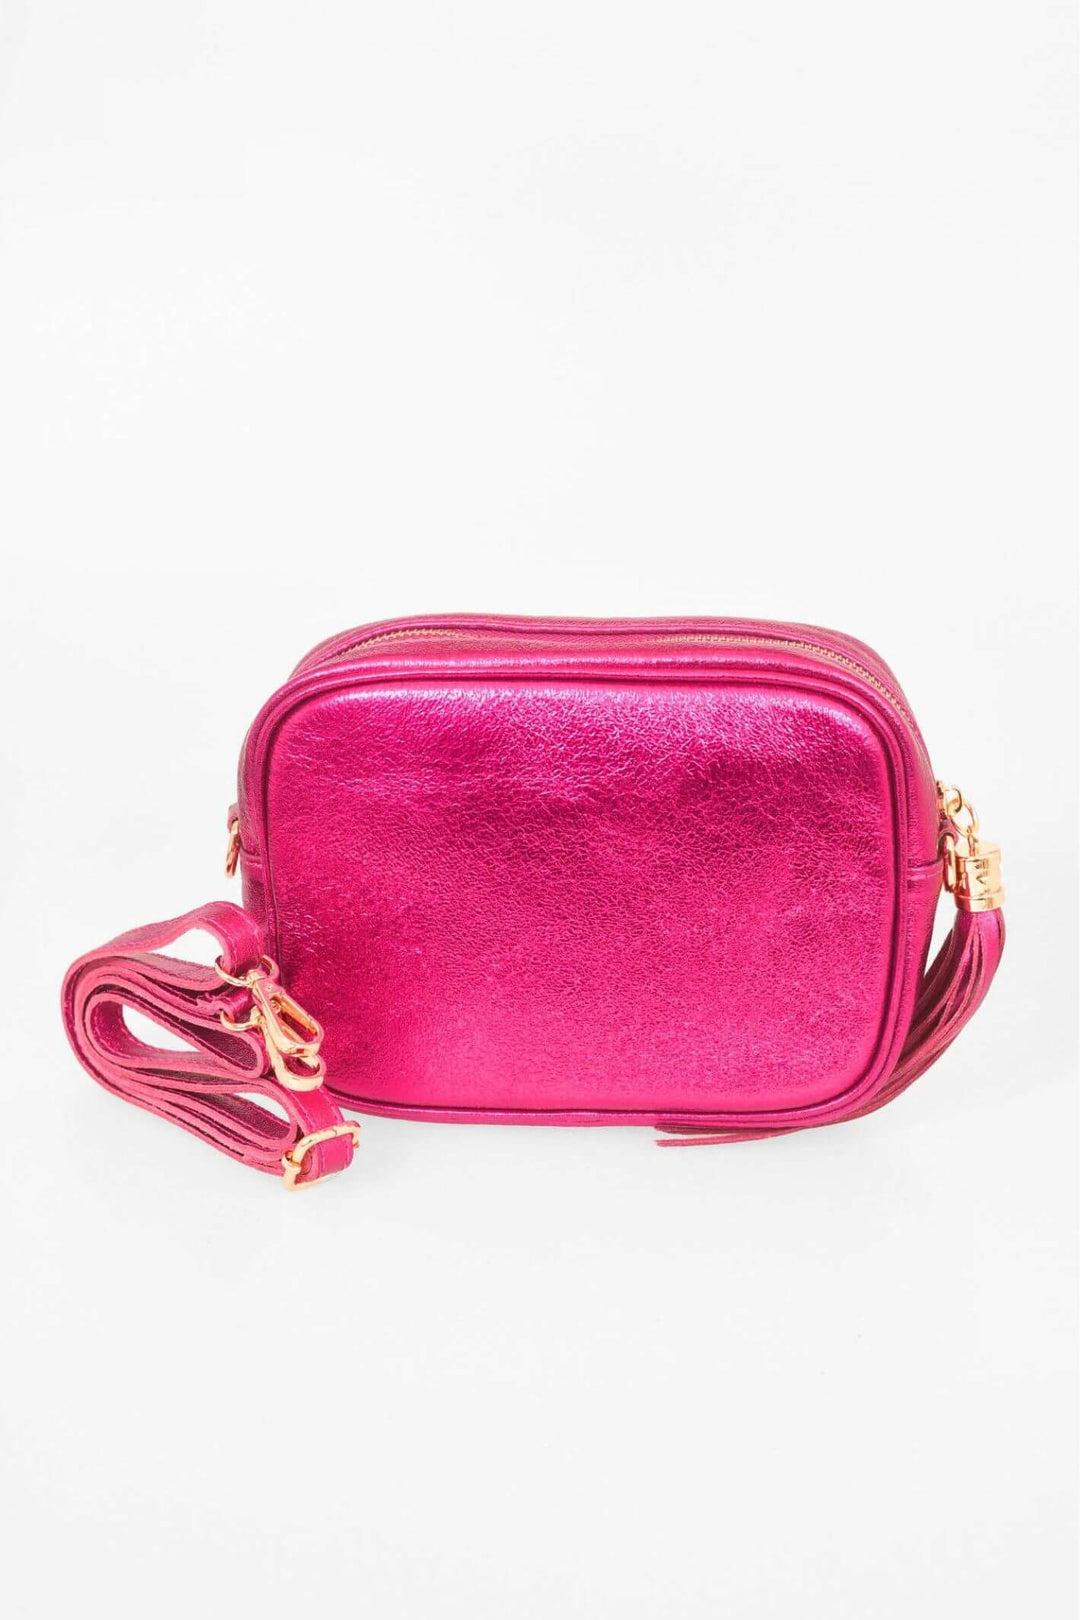 Metallic Magenta Pink Leather Camera Bag